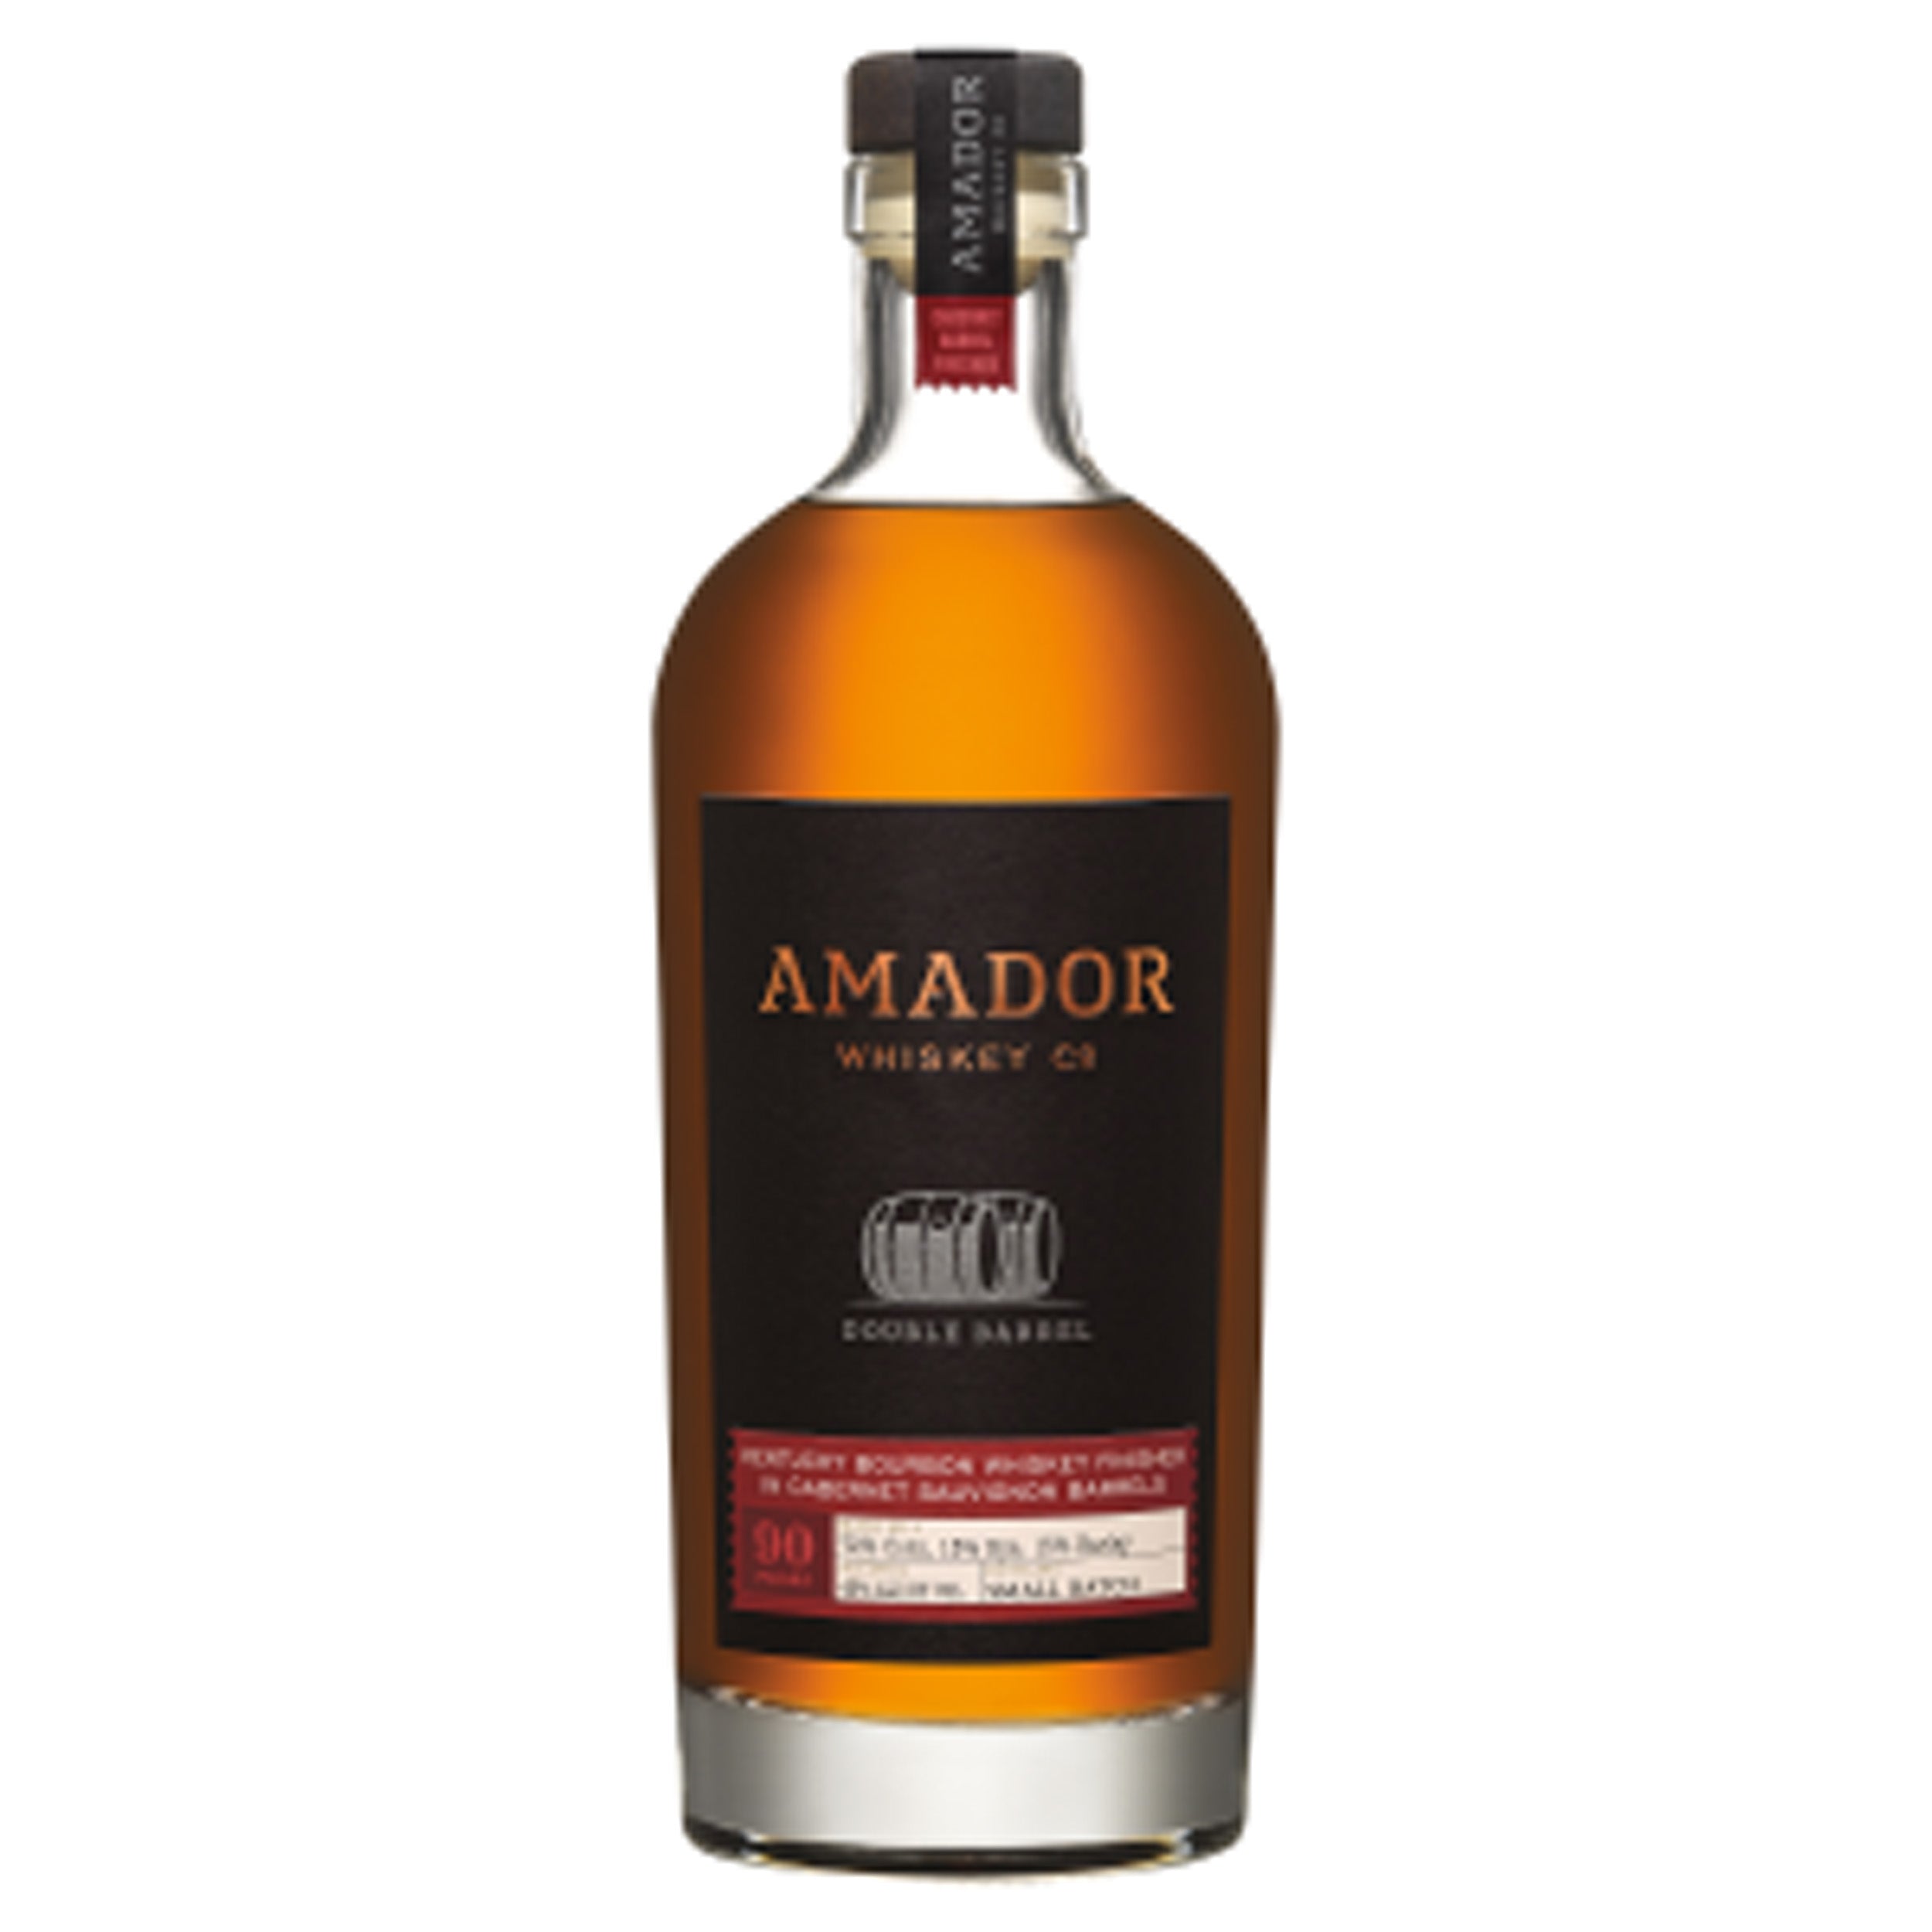 Amador Whiskey Double Barrel Cabernet Sauvignon Finished Bourbon Whiskey